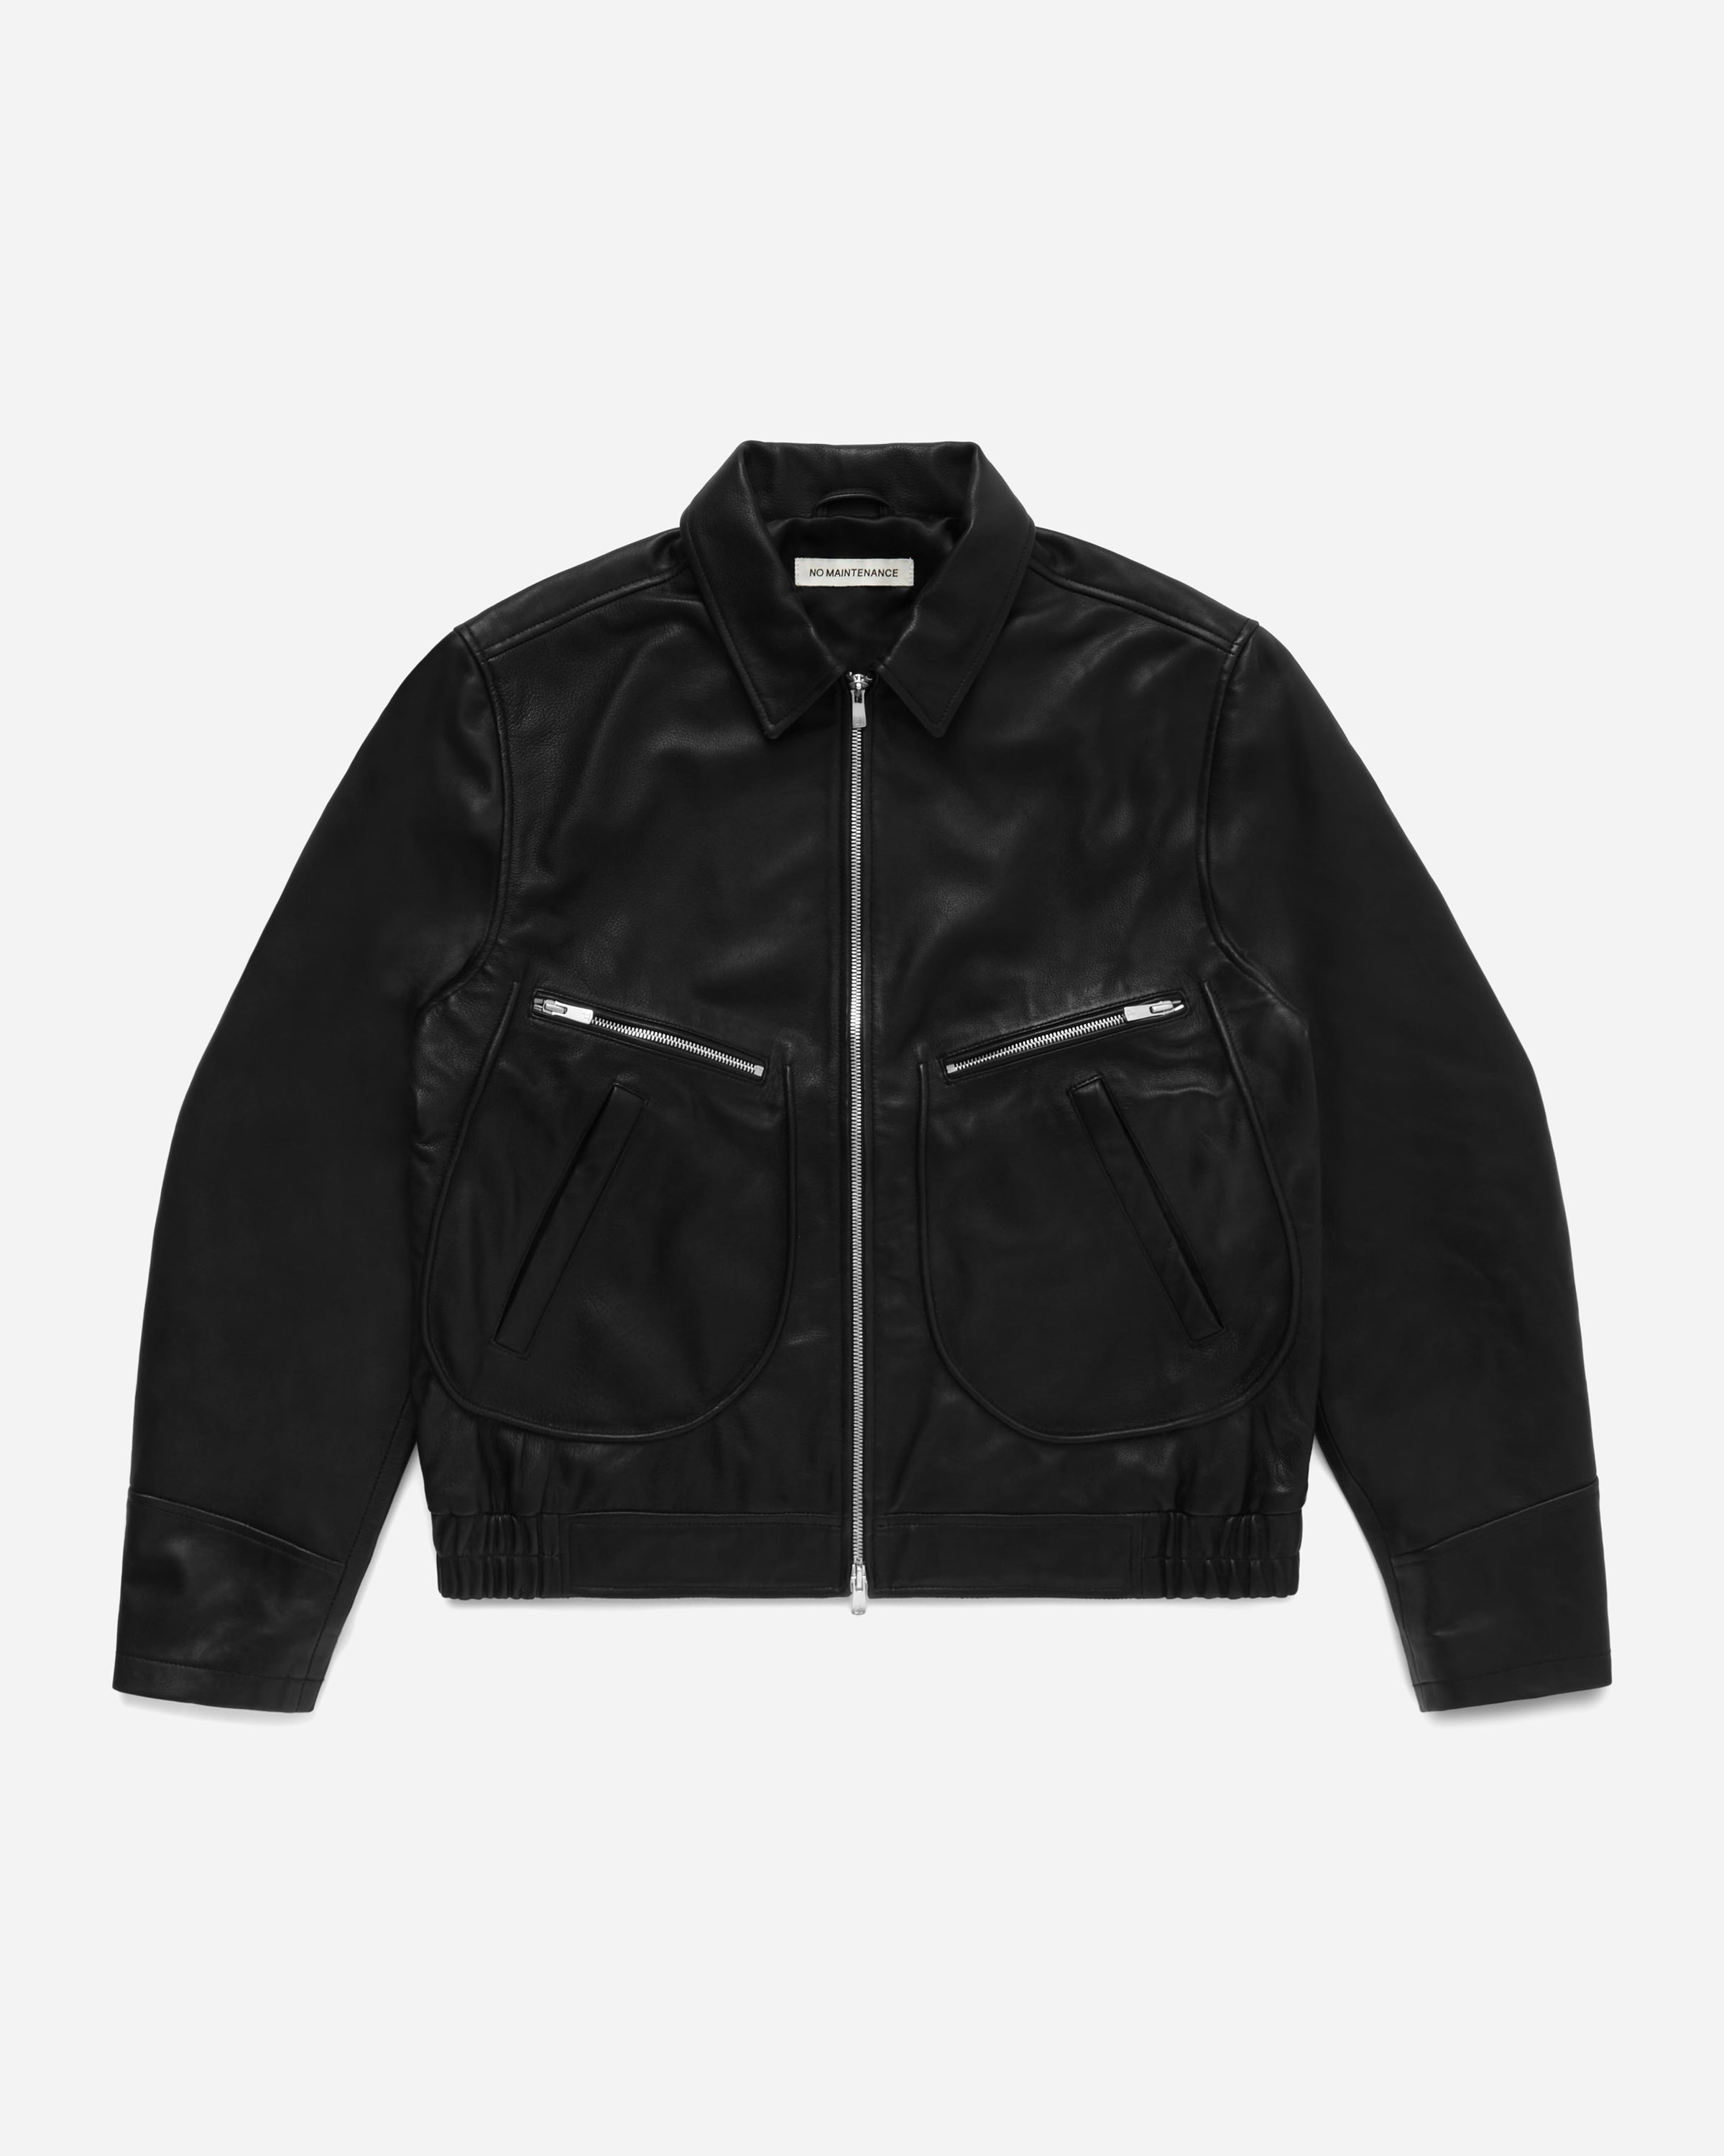 Aero Leather Jacket